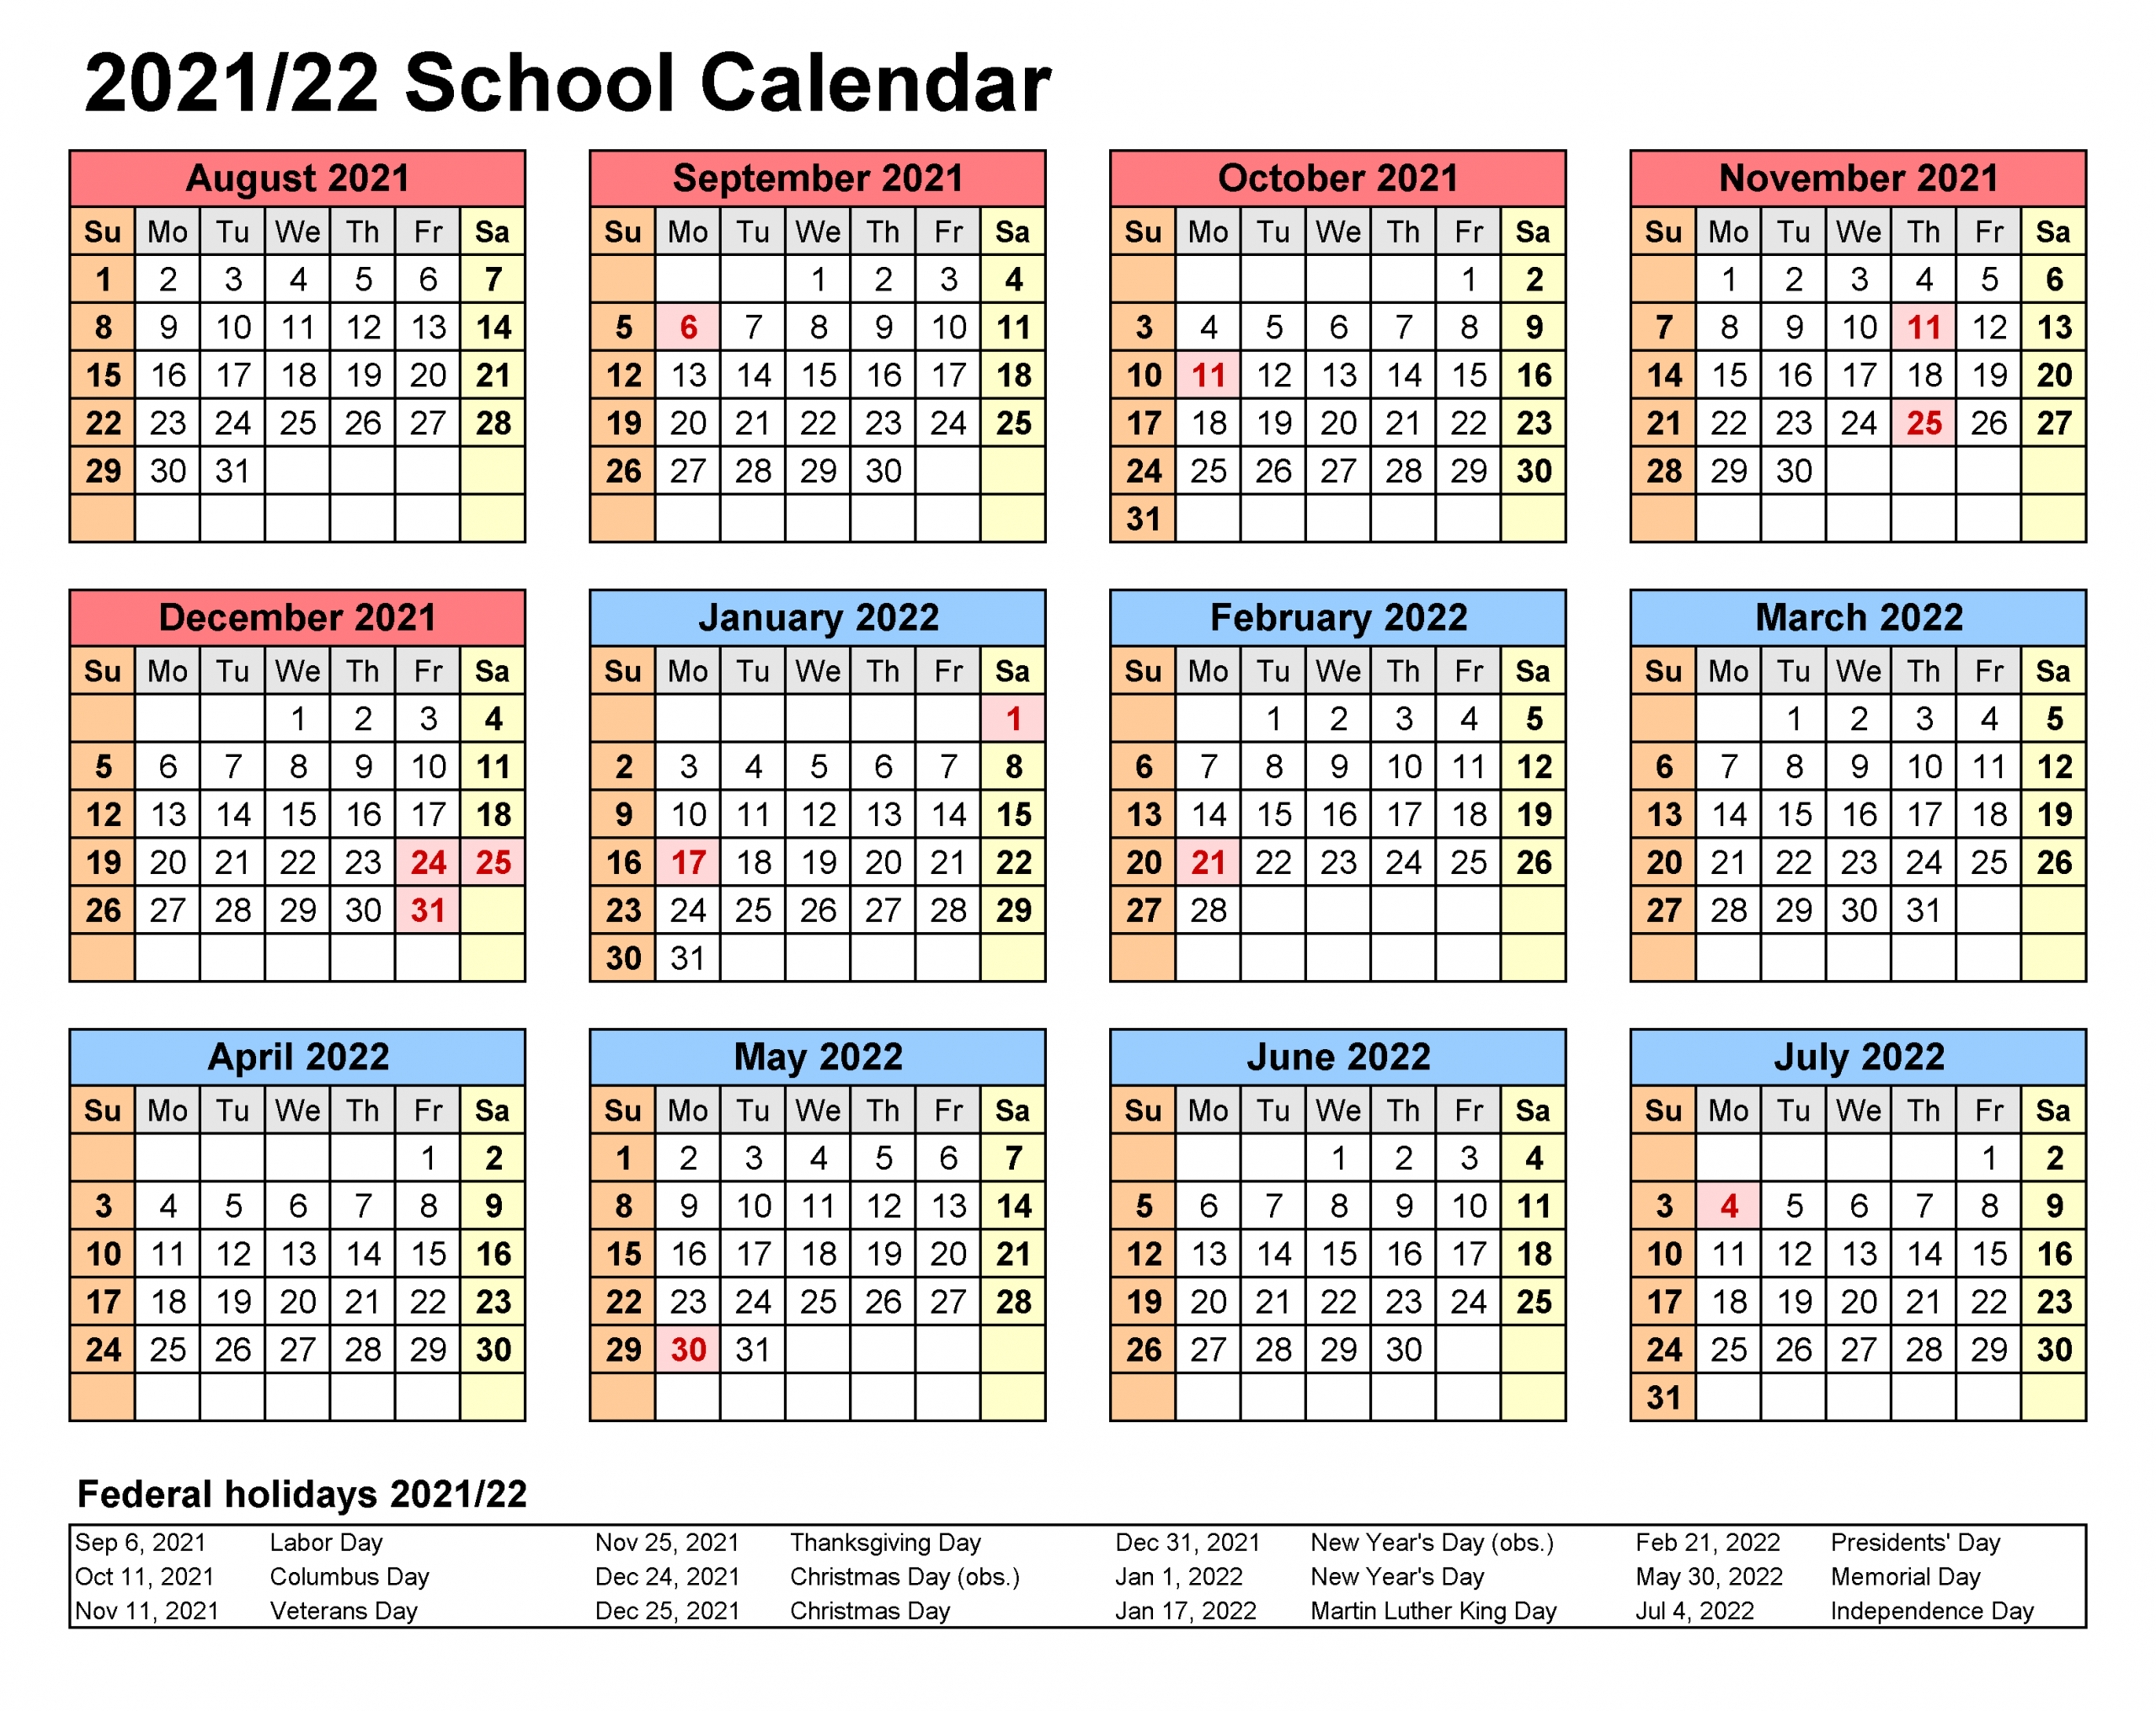 Escambia County School District Calendar 2021-22